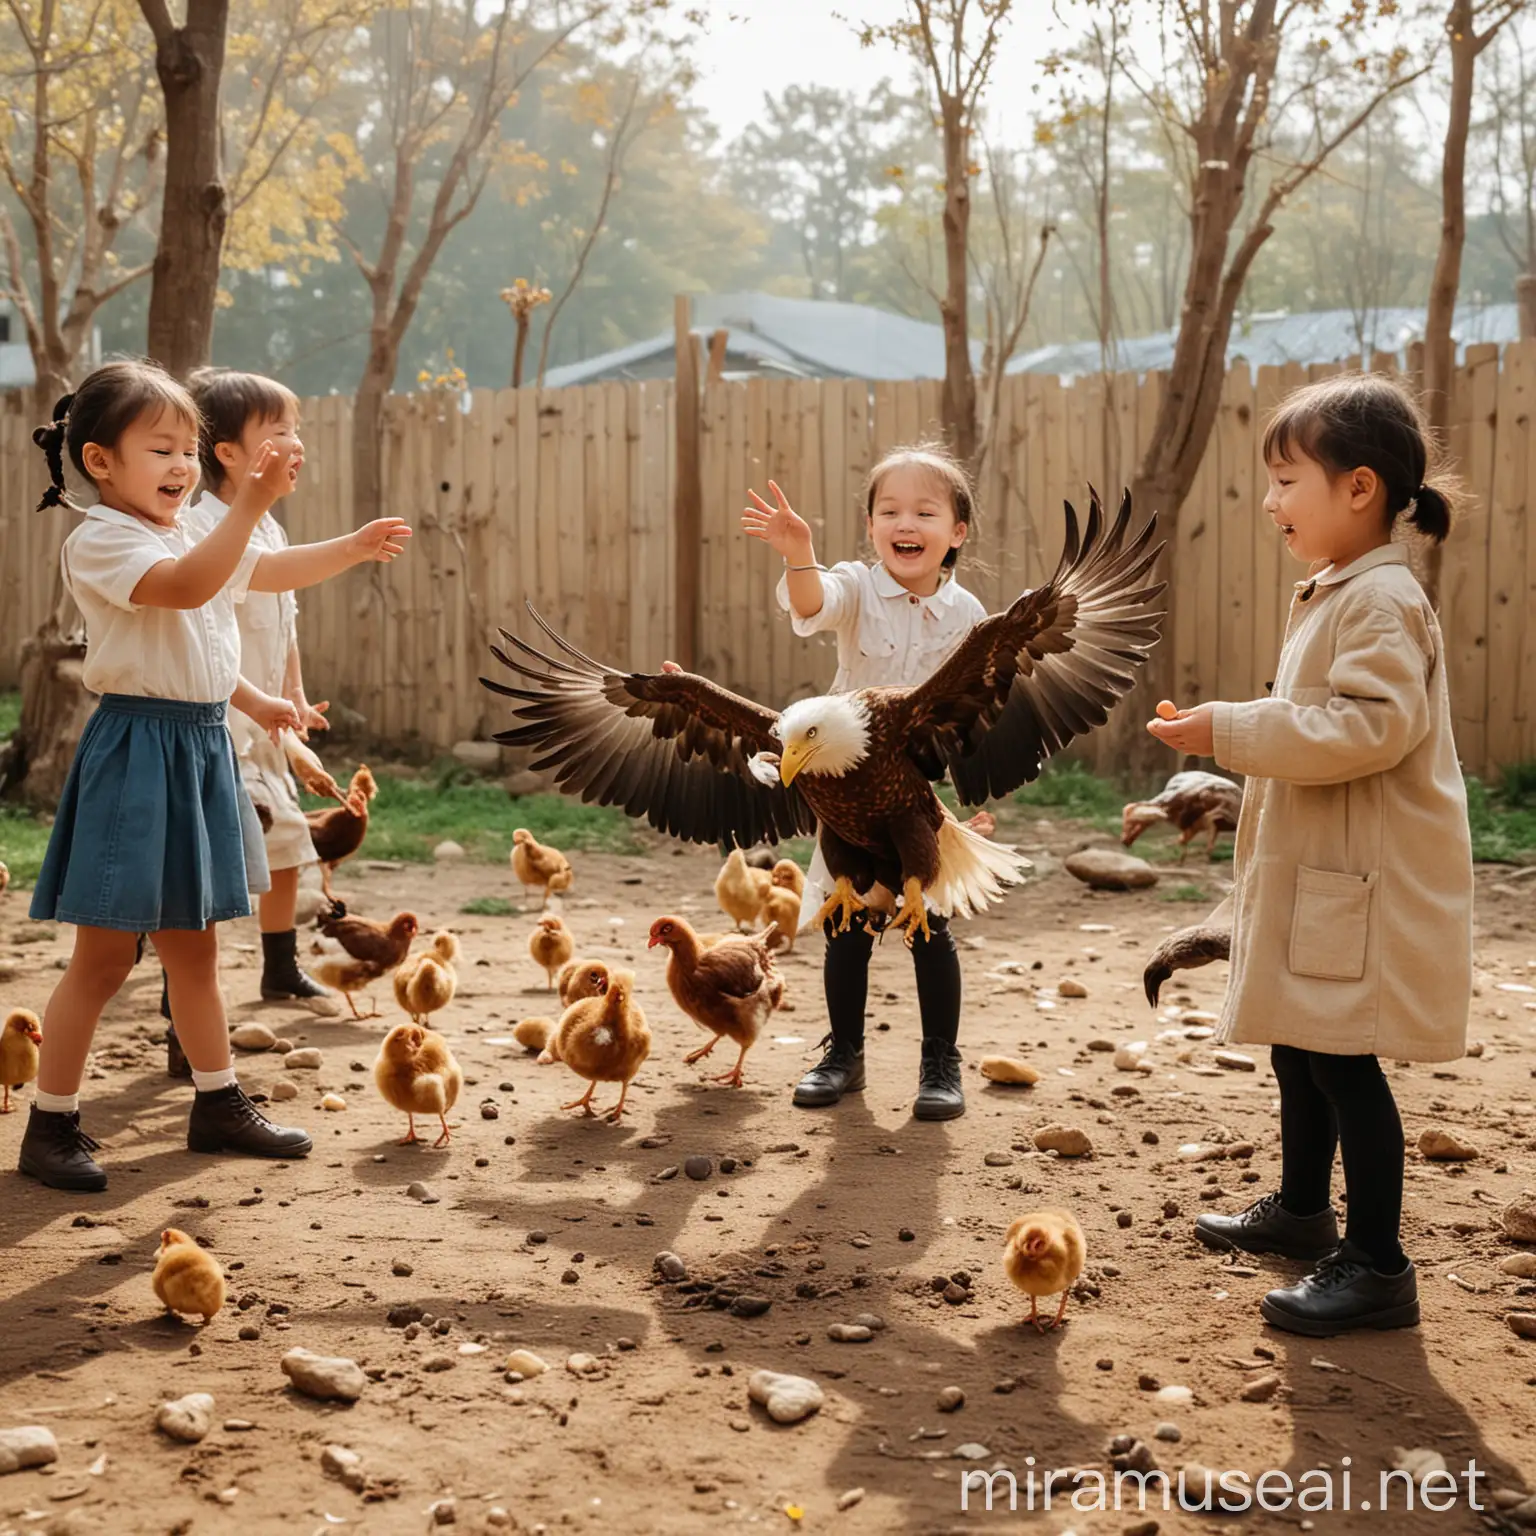 一群孩子在幼儿园快乐的玩耍，做老鹰捉小鸡的游戏